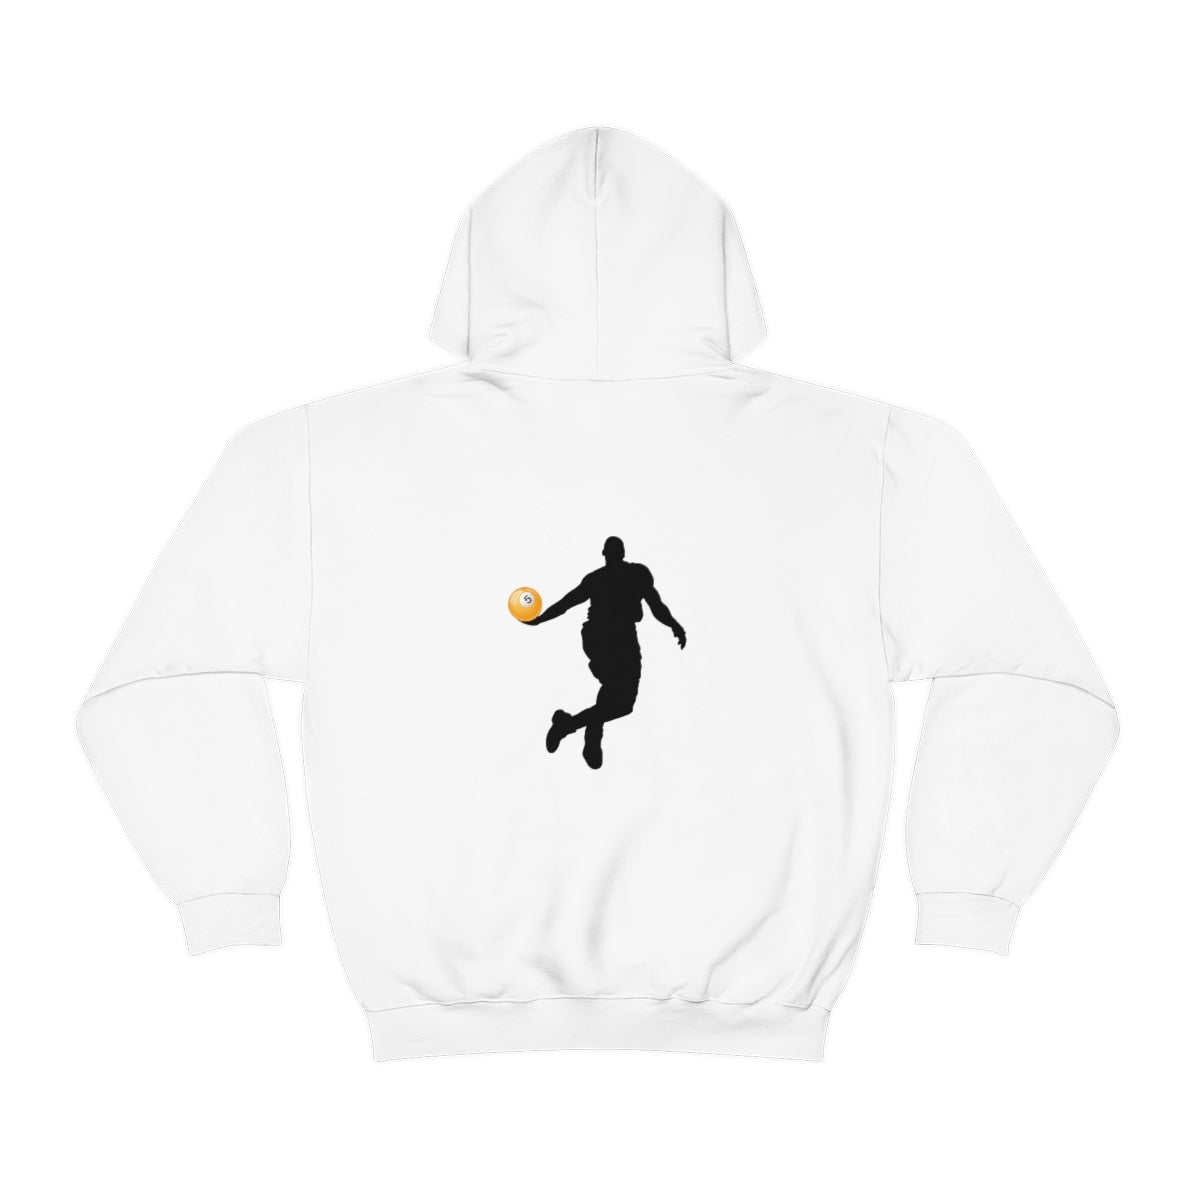 'Baller' - Unisex Hooded Sweatshirt